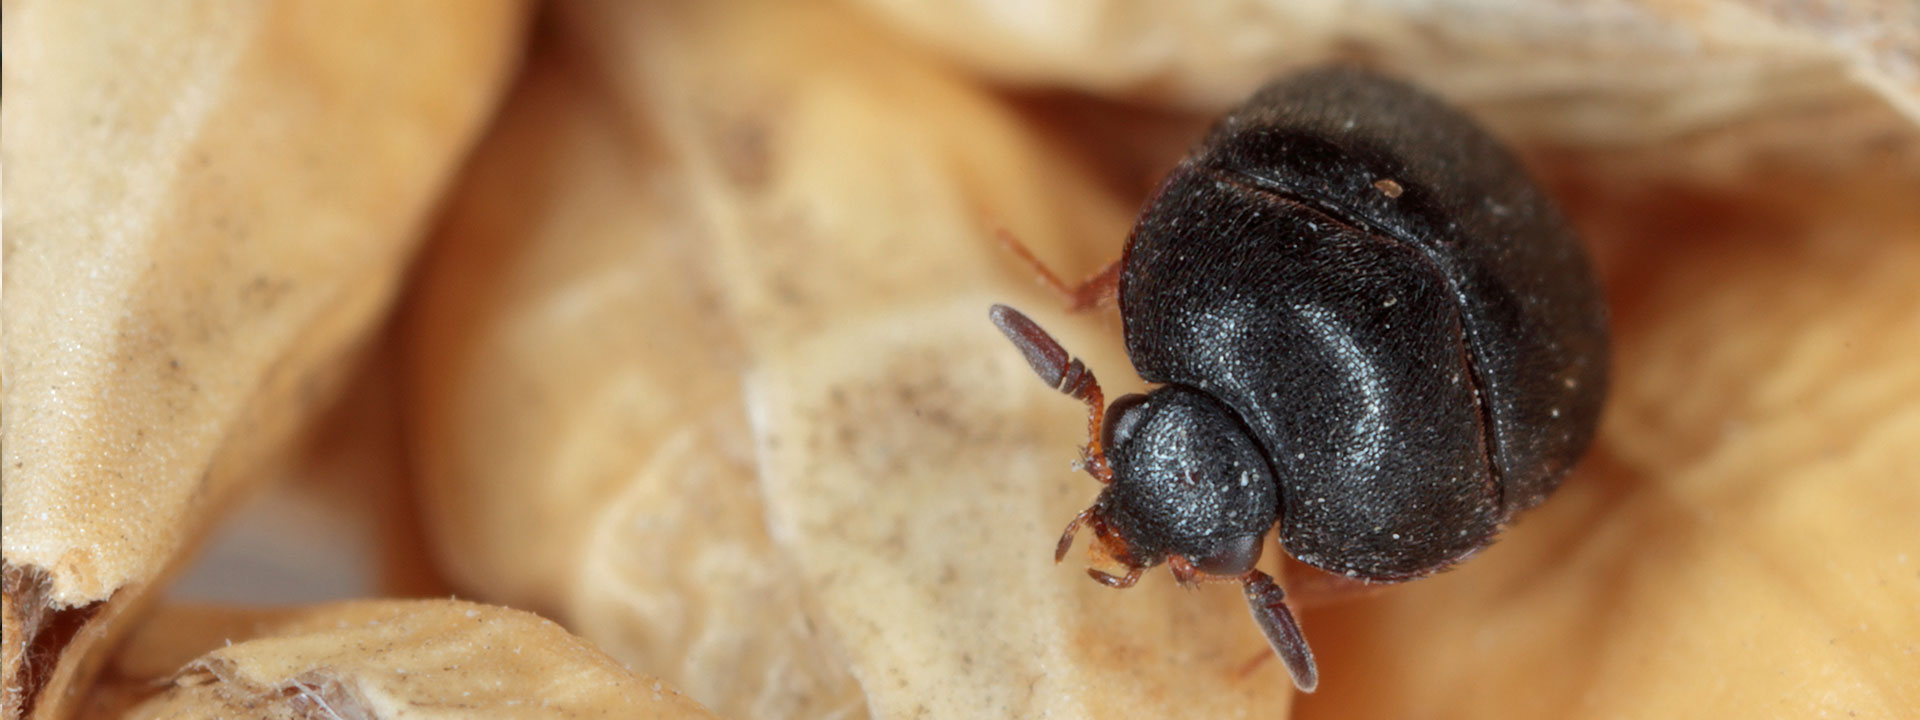 A carpet beetle eating.